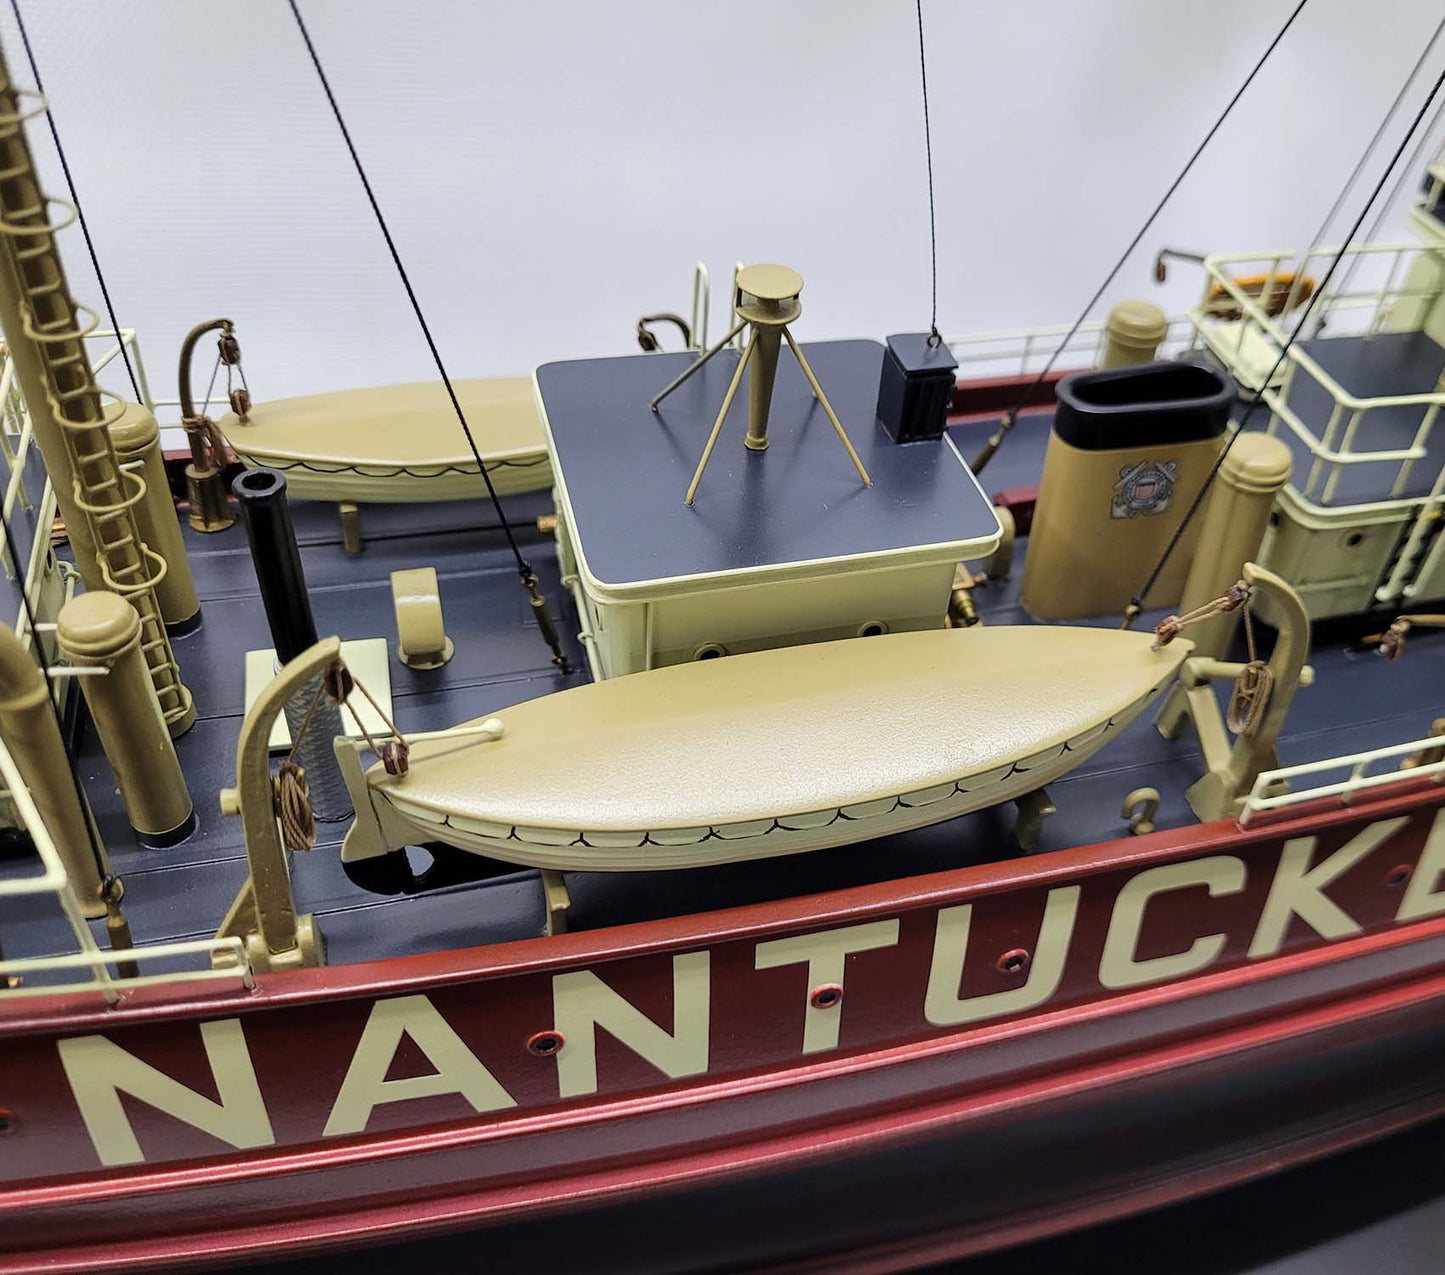 Nantucket Lightship Model LV-112 - Lannan Gallery